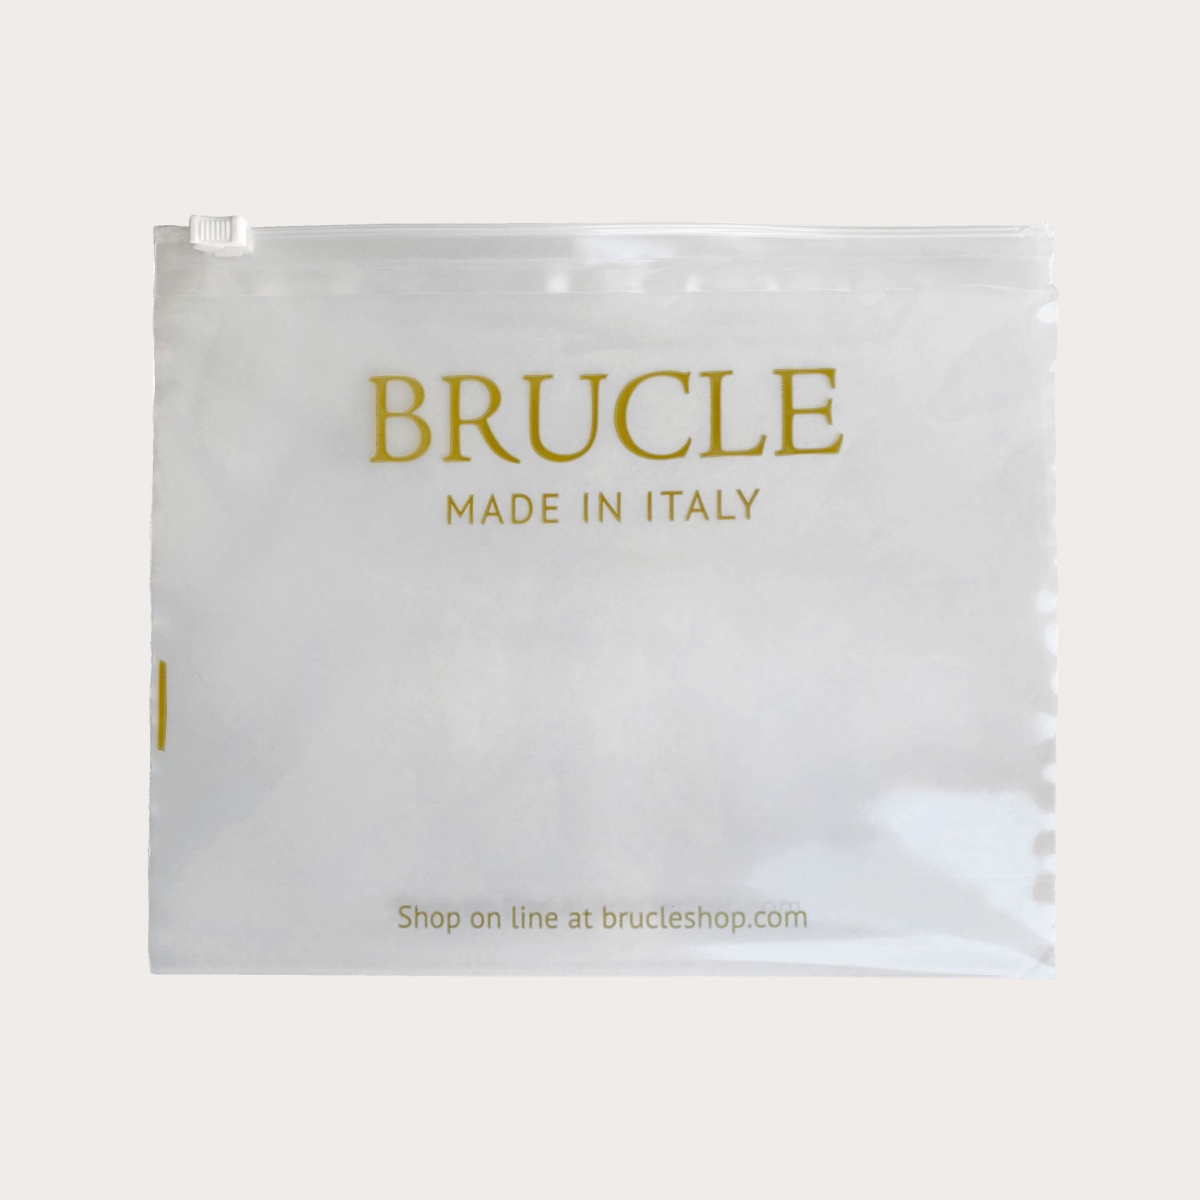 Schutzmaske stoffmaske braun seide Brucle